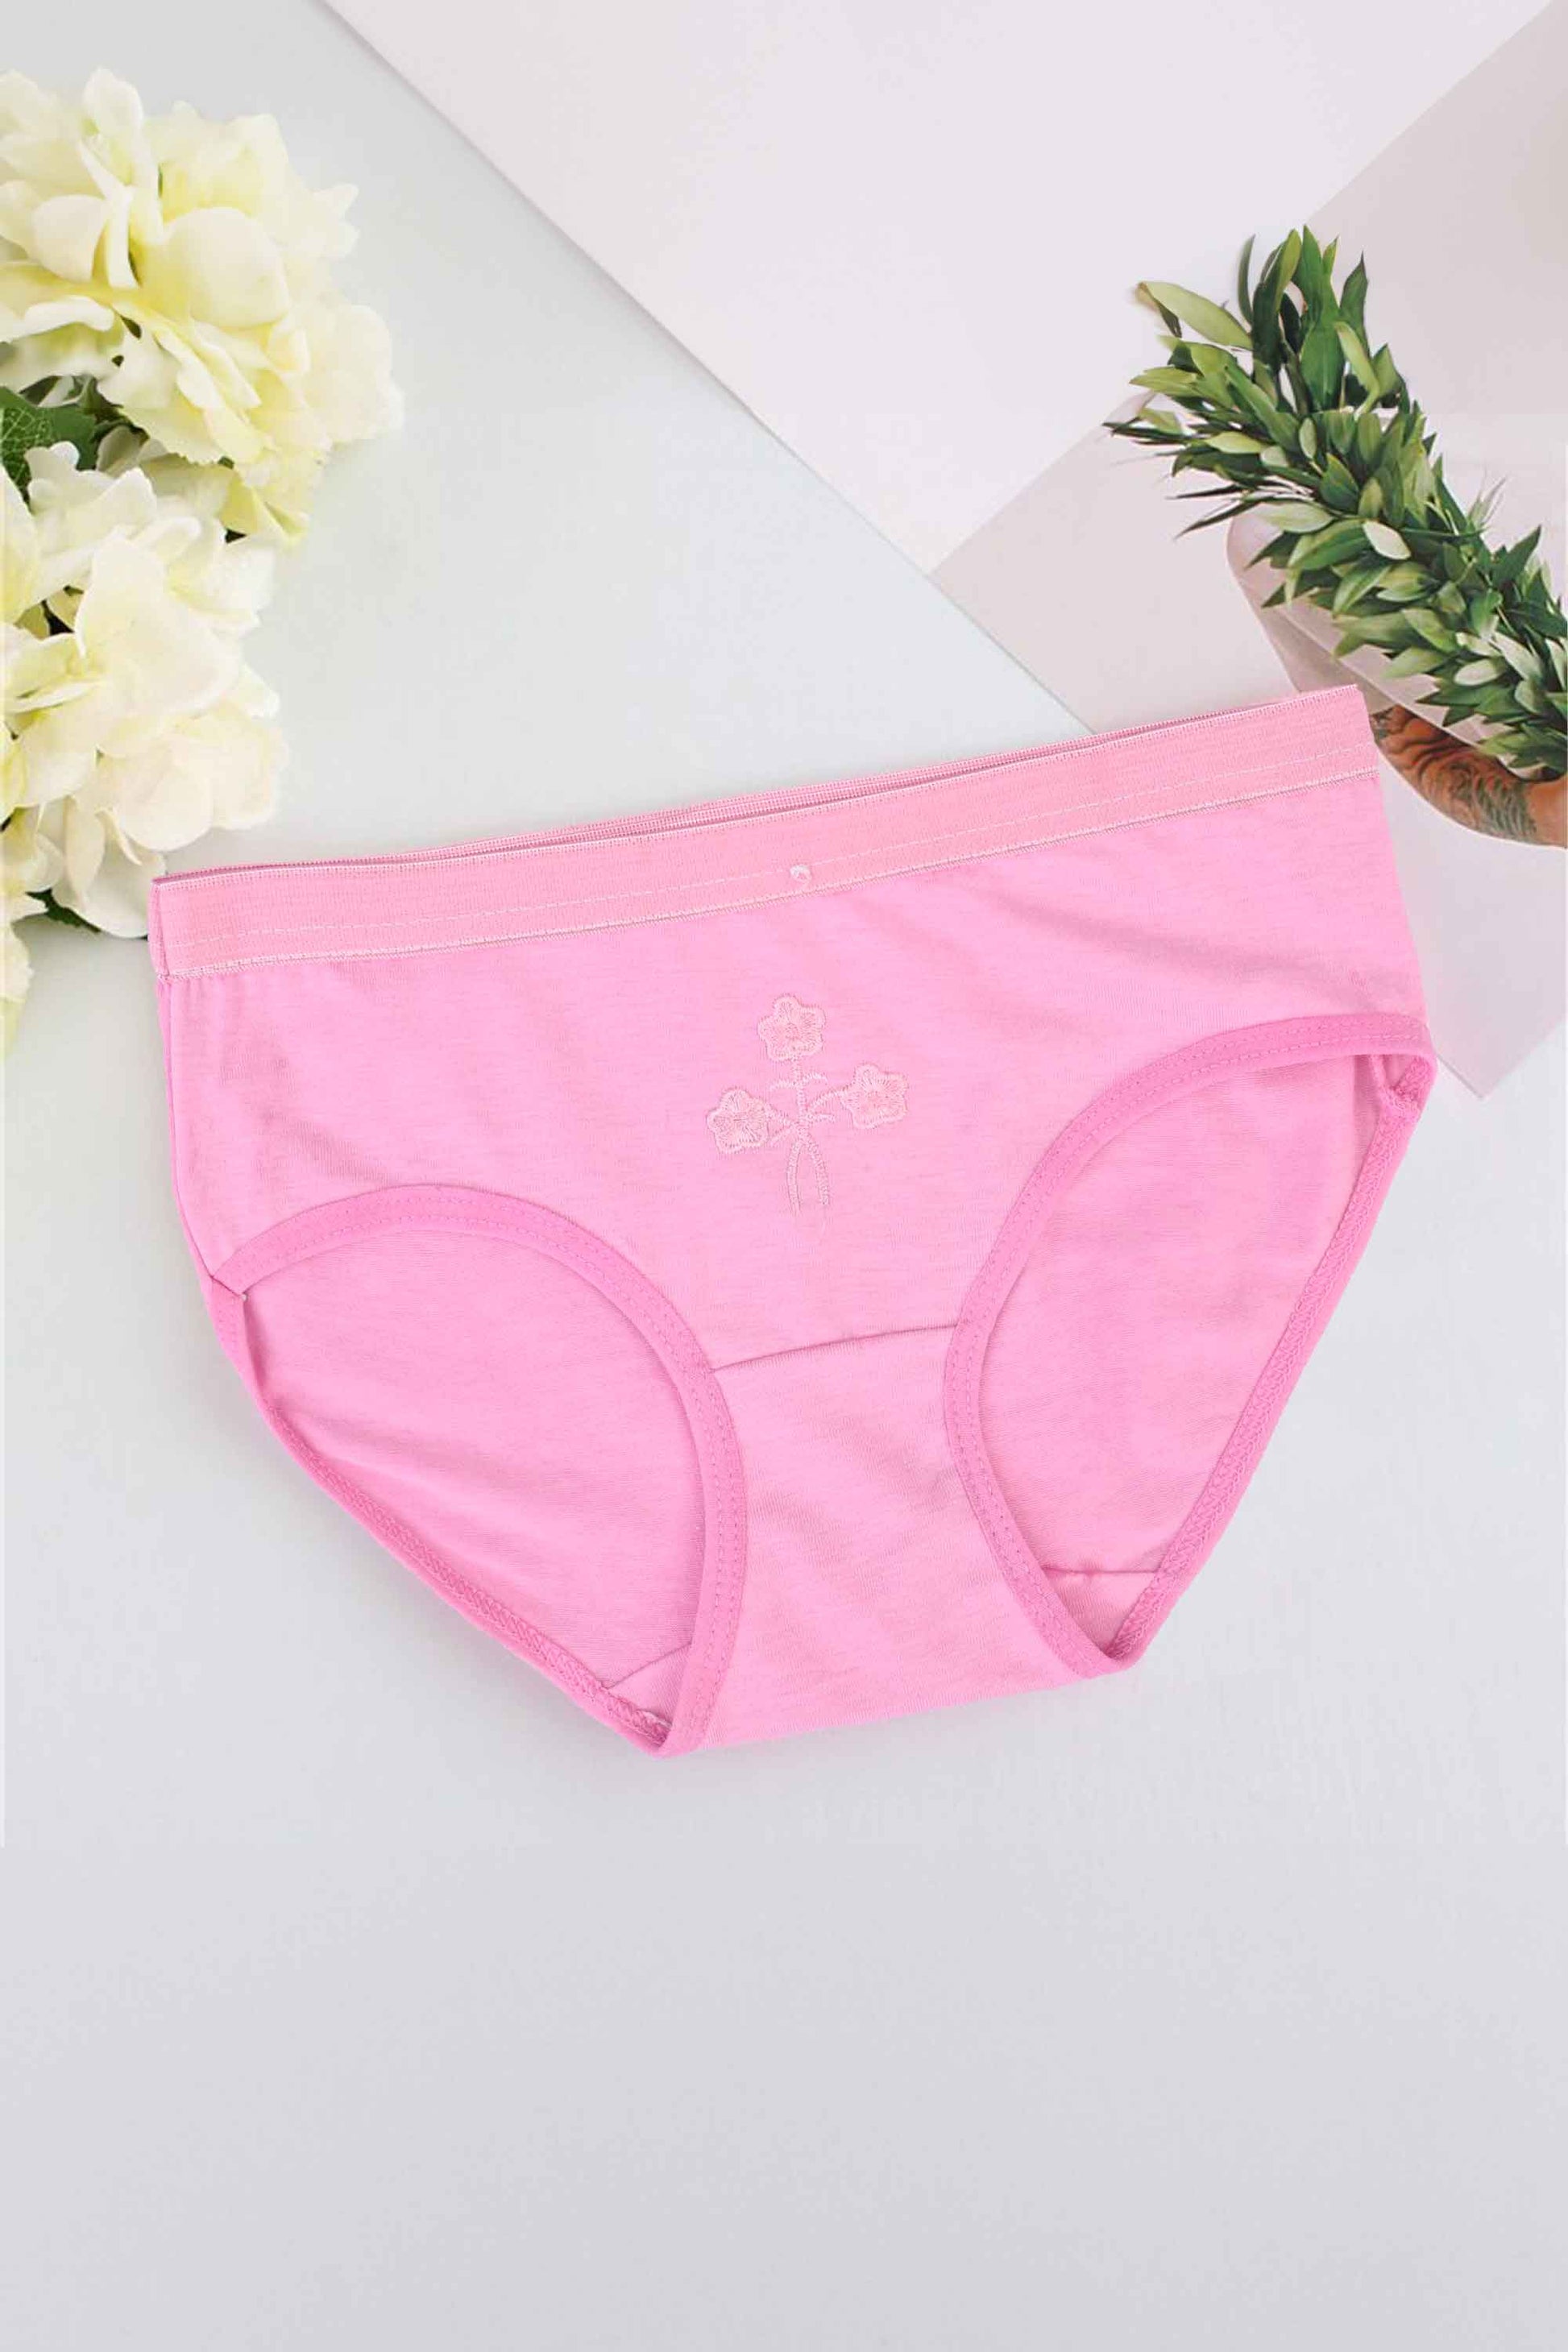 LZD Girl's/Women's Underwear Panties